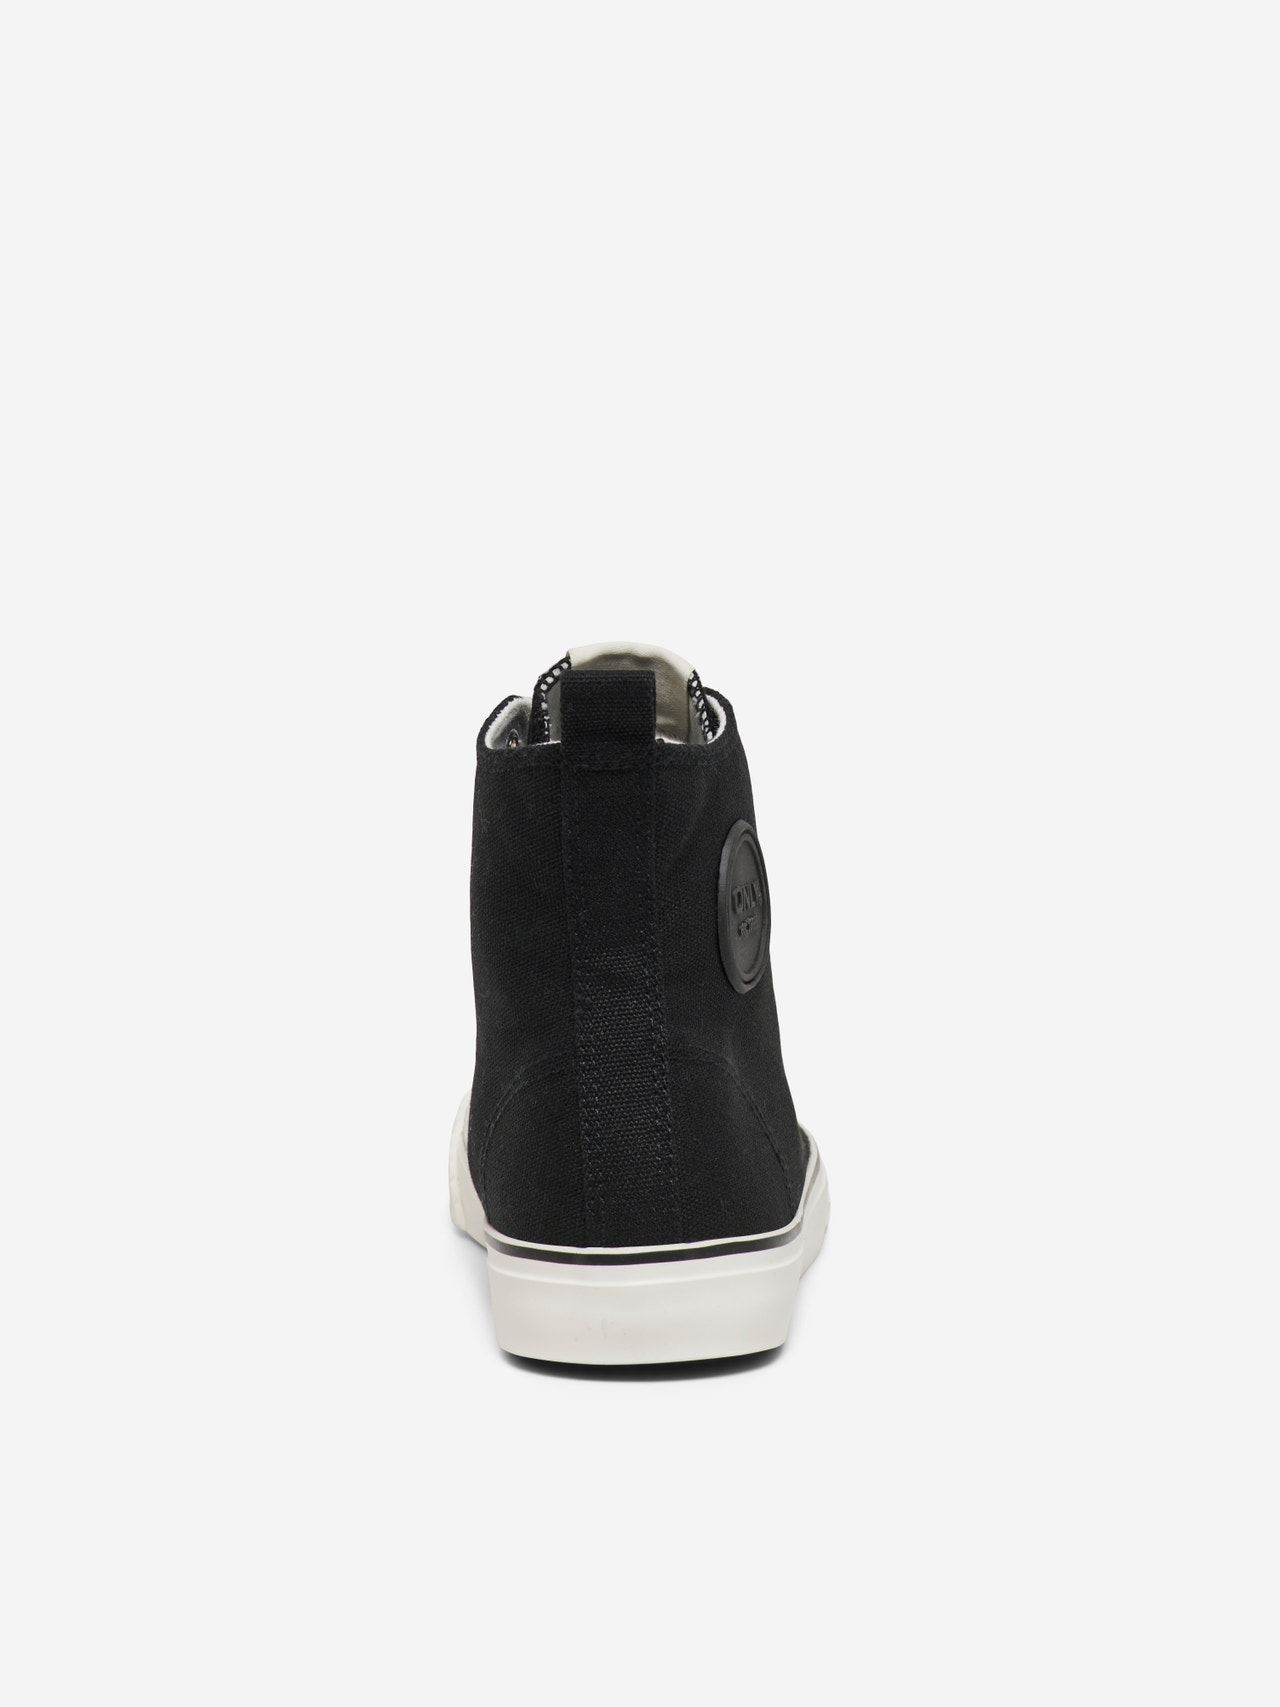 ONLY Almond toe Sneaker -Black - 15304530